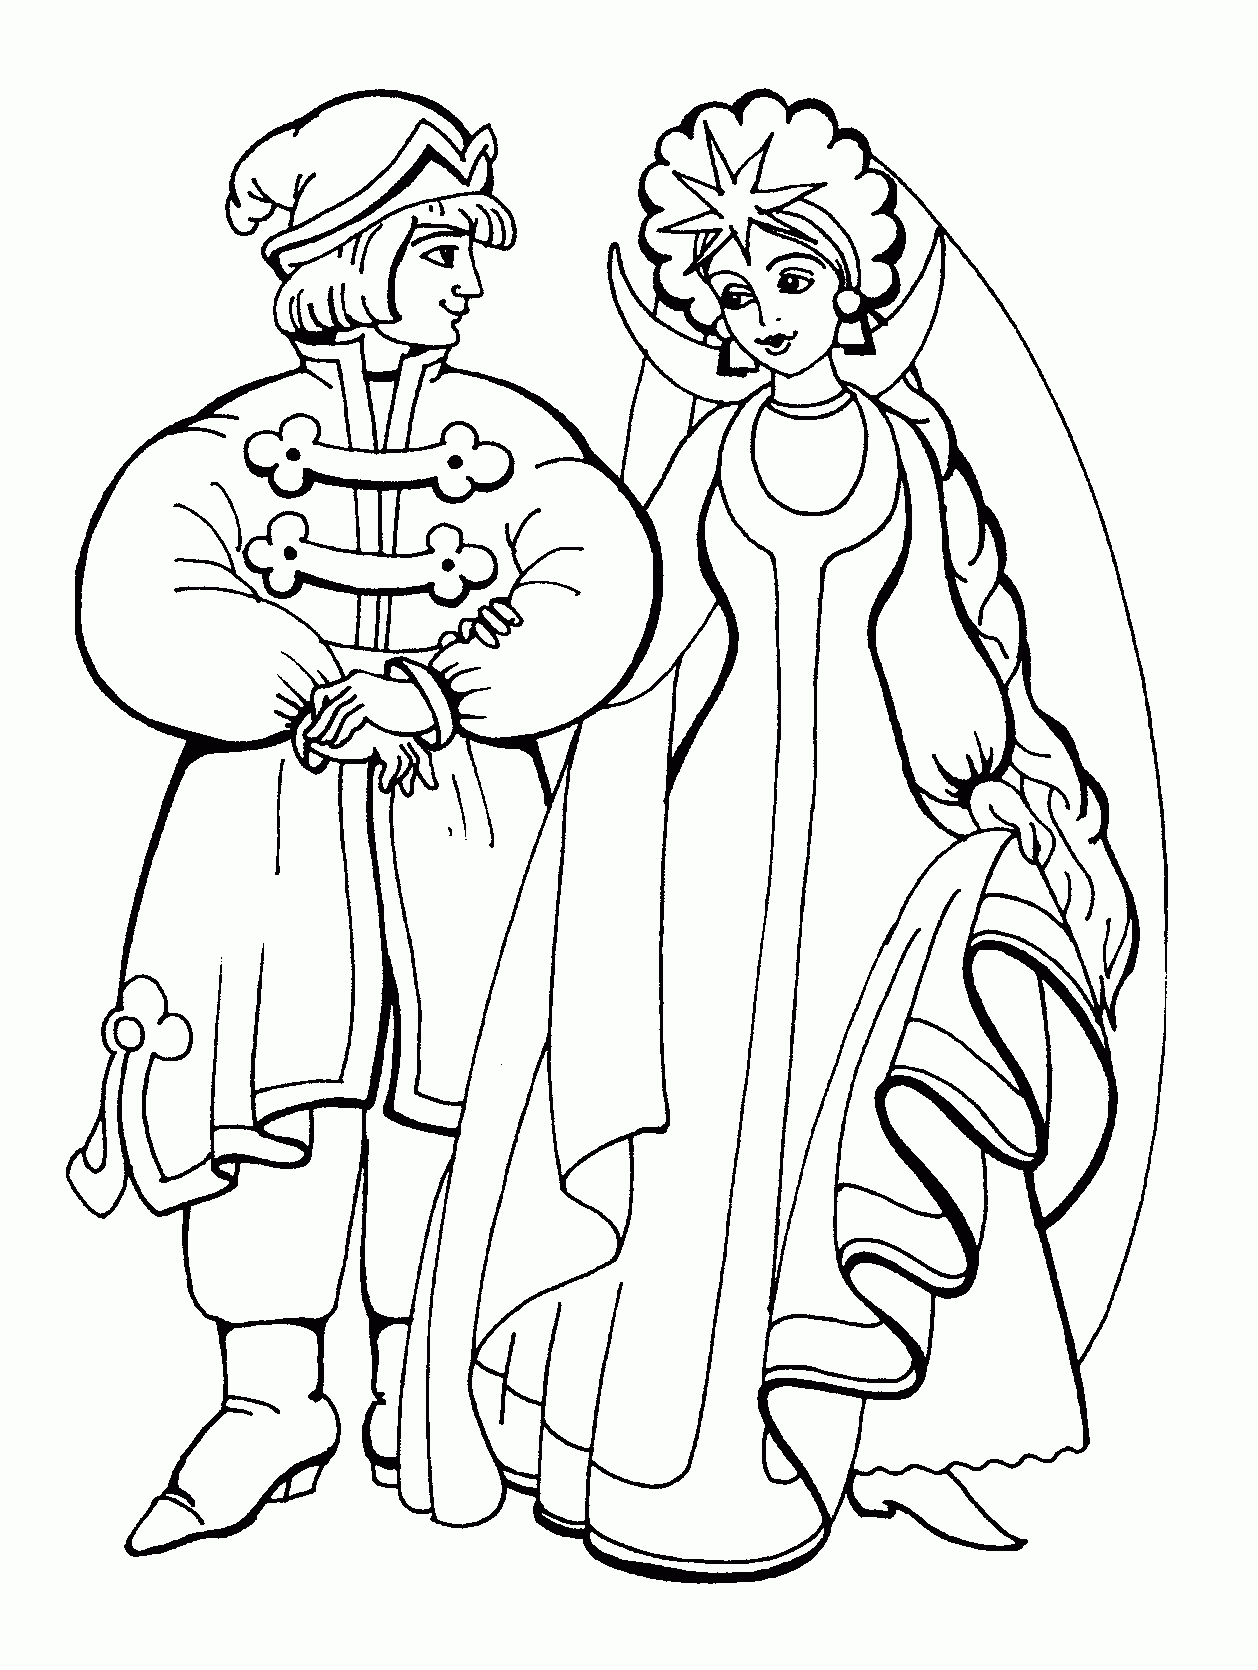 Принц и принцесса раскраска детская